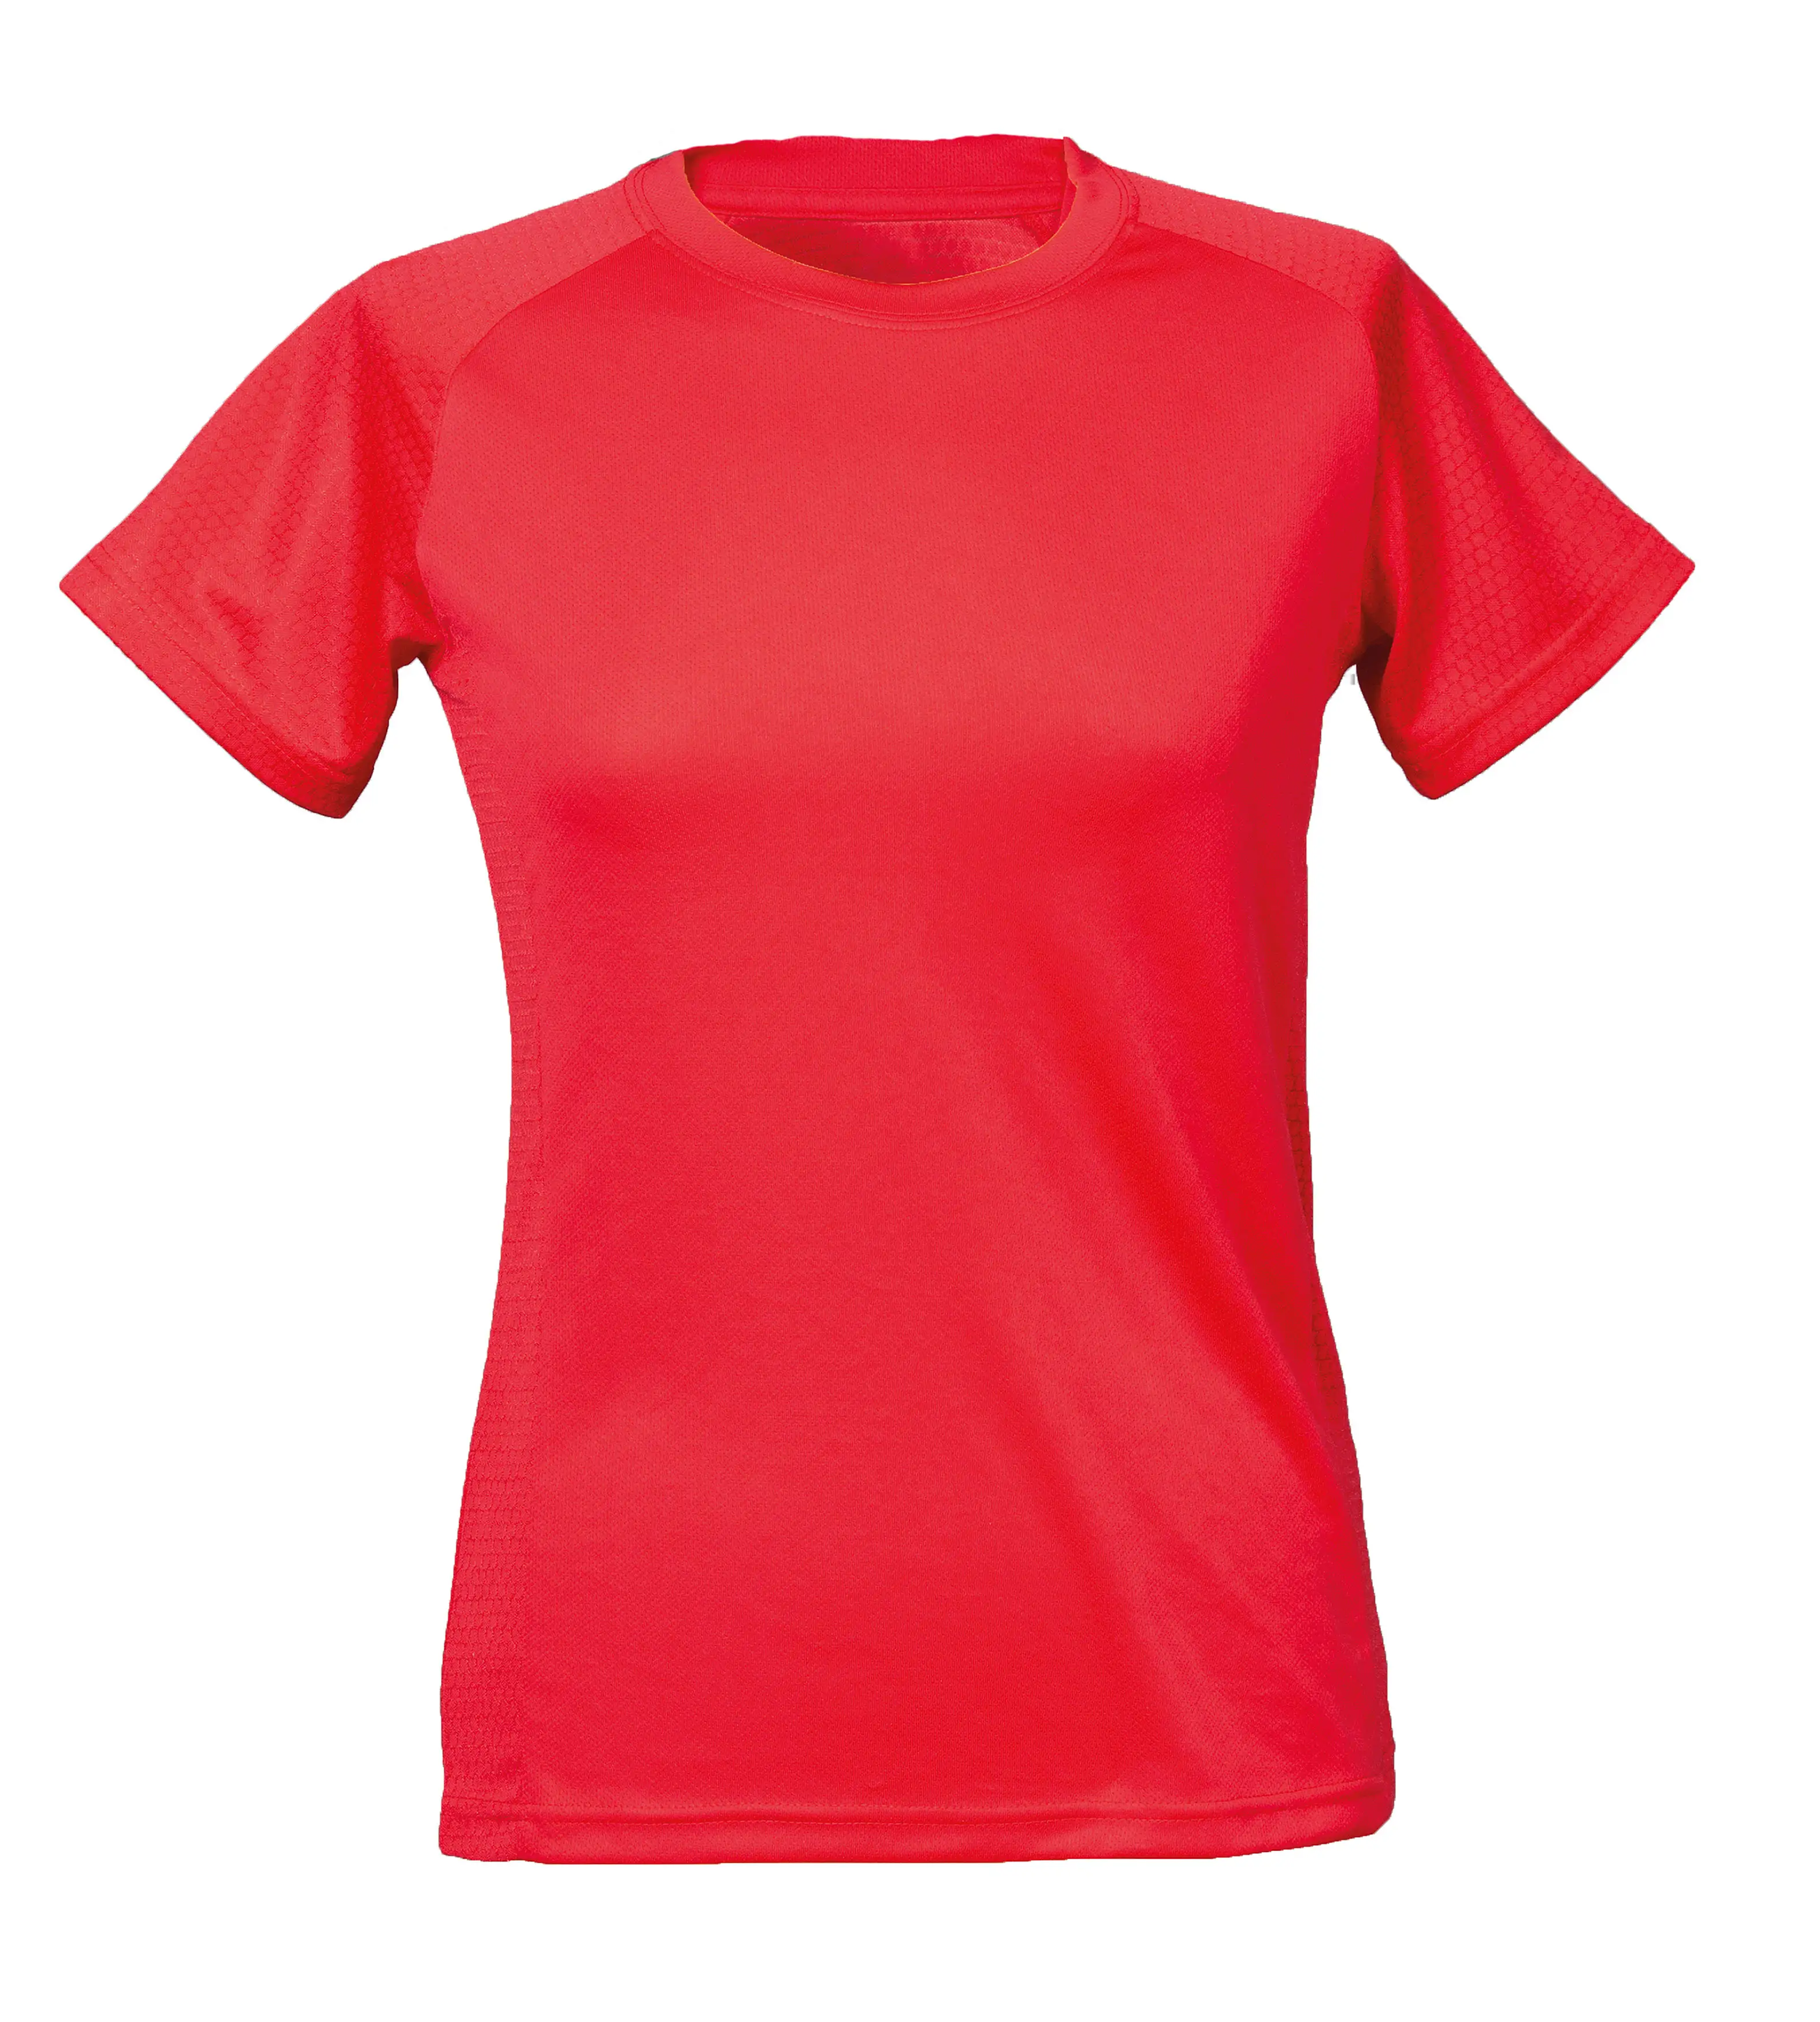 T-Shirt Sportiva Colori Fluo Personalizzata - James Ross Collection